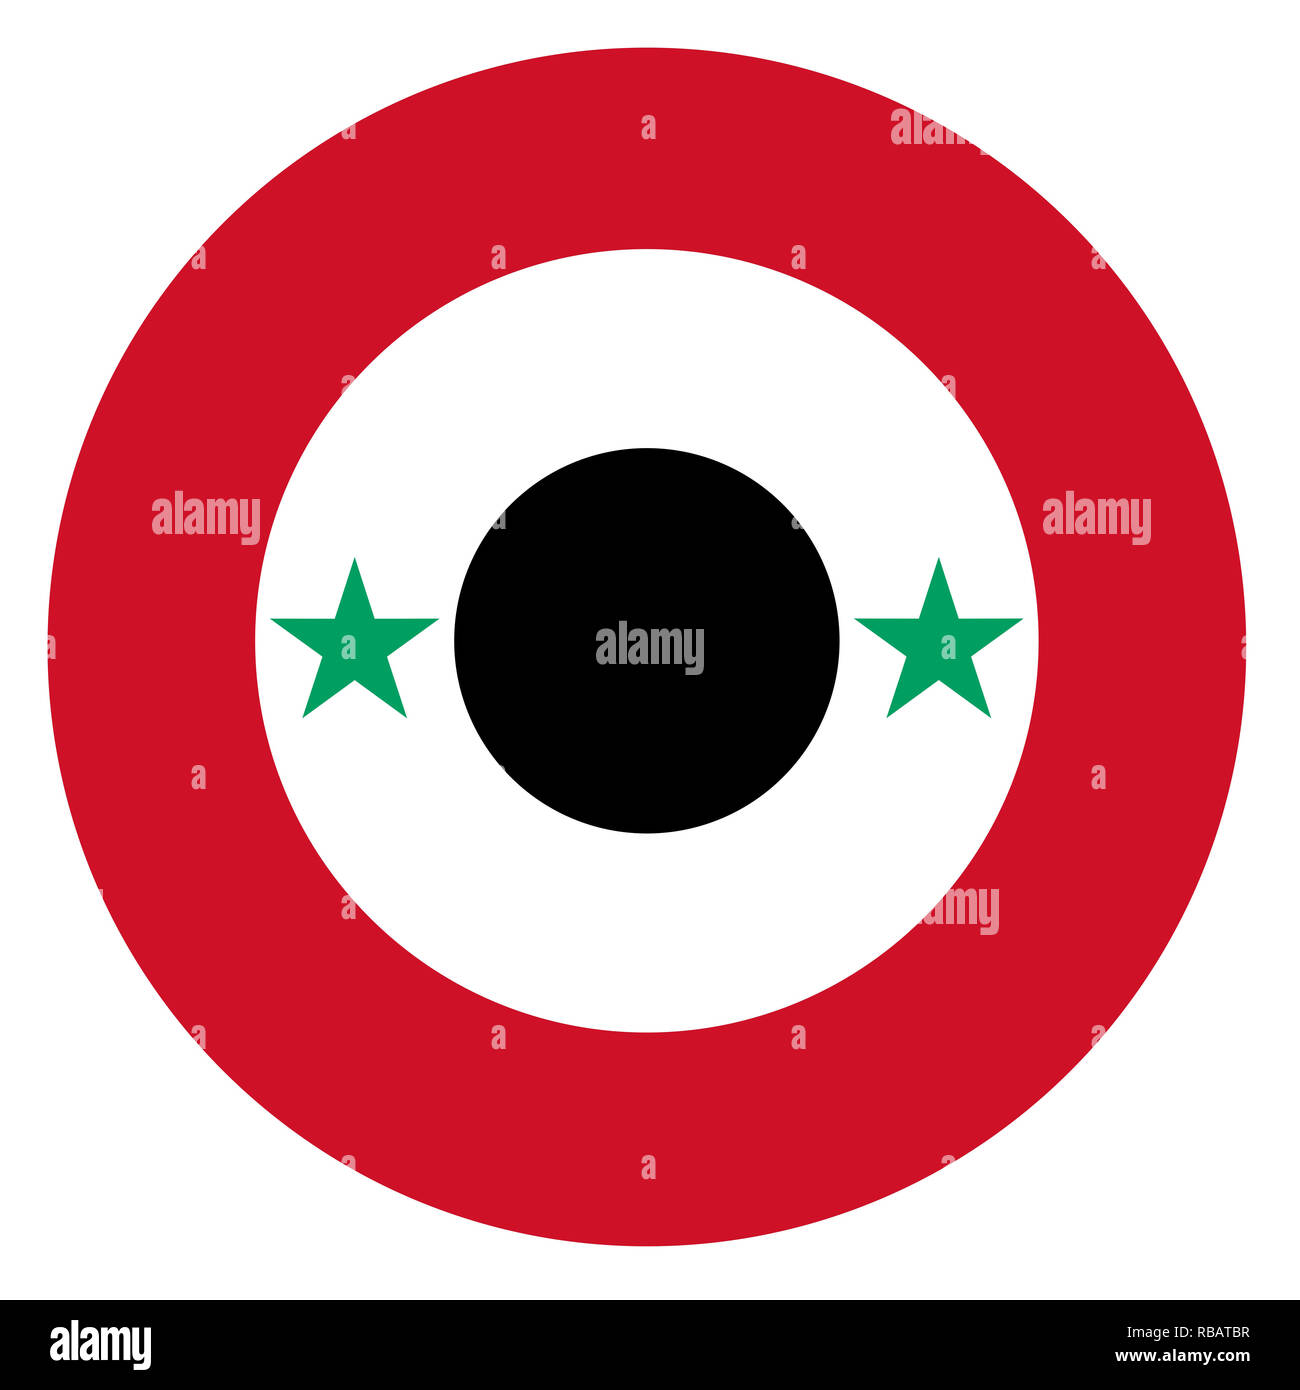 Syria country roundel flag based round symbol Stock Photo